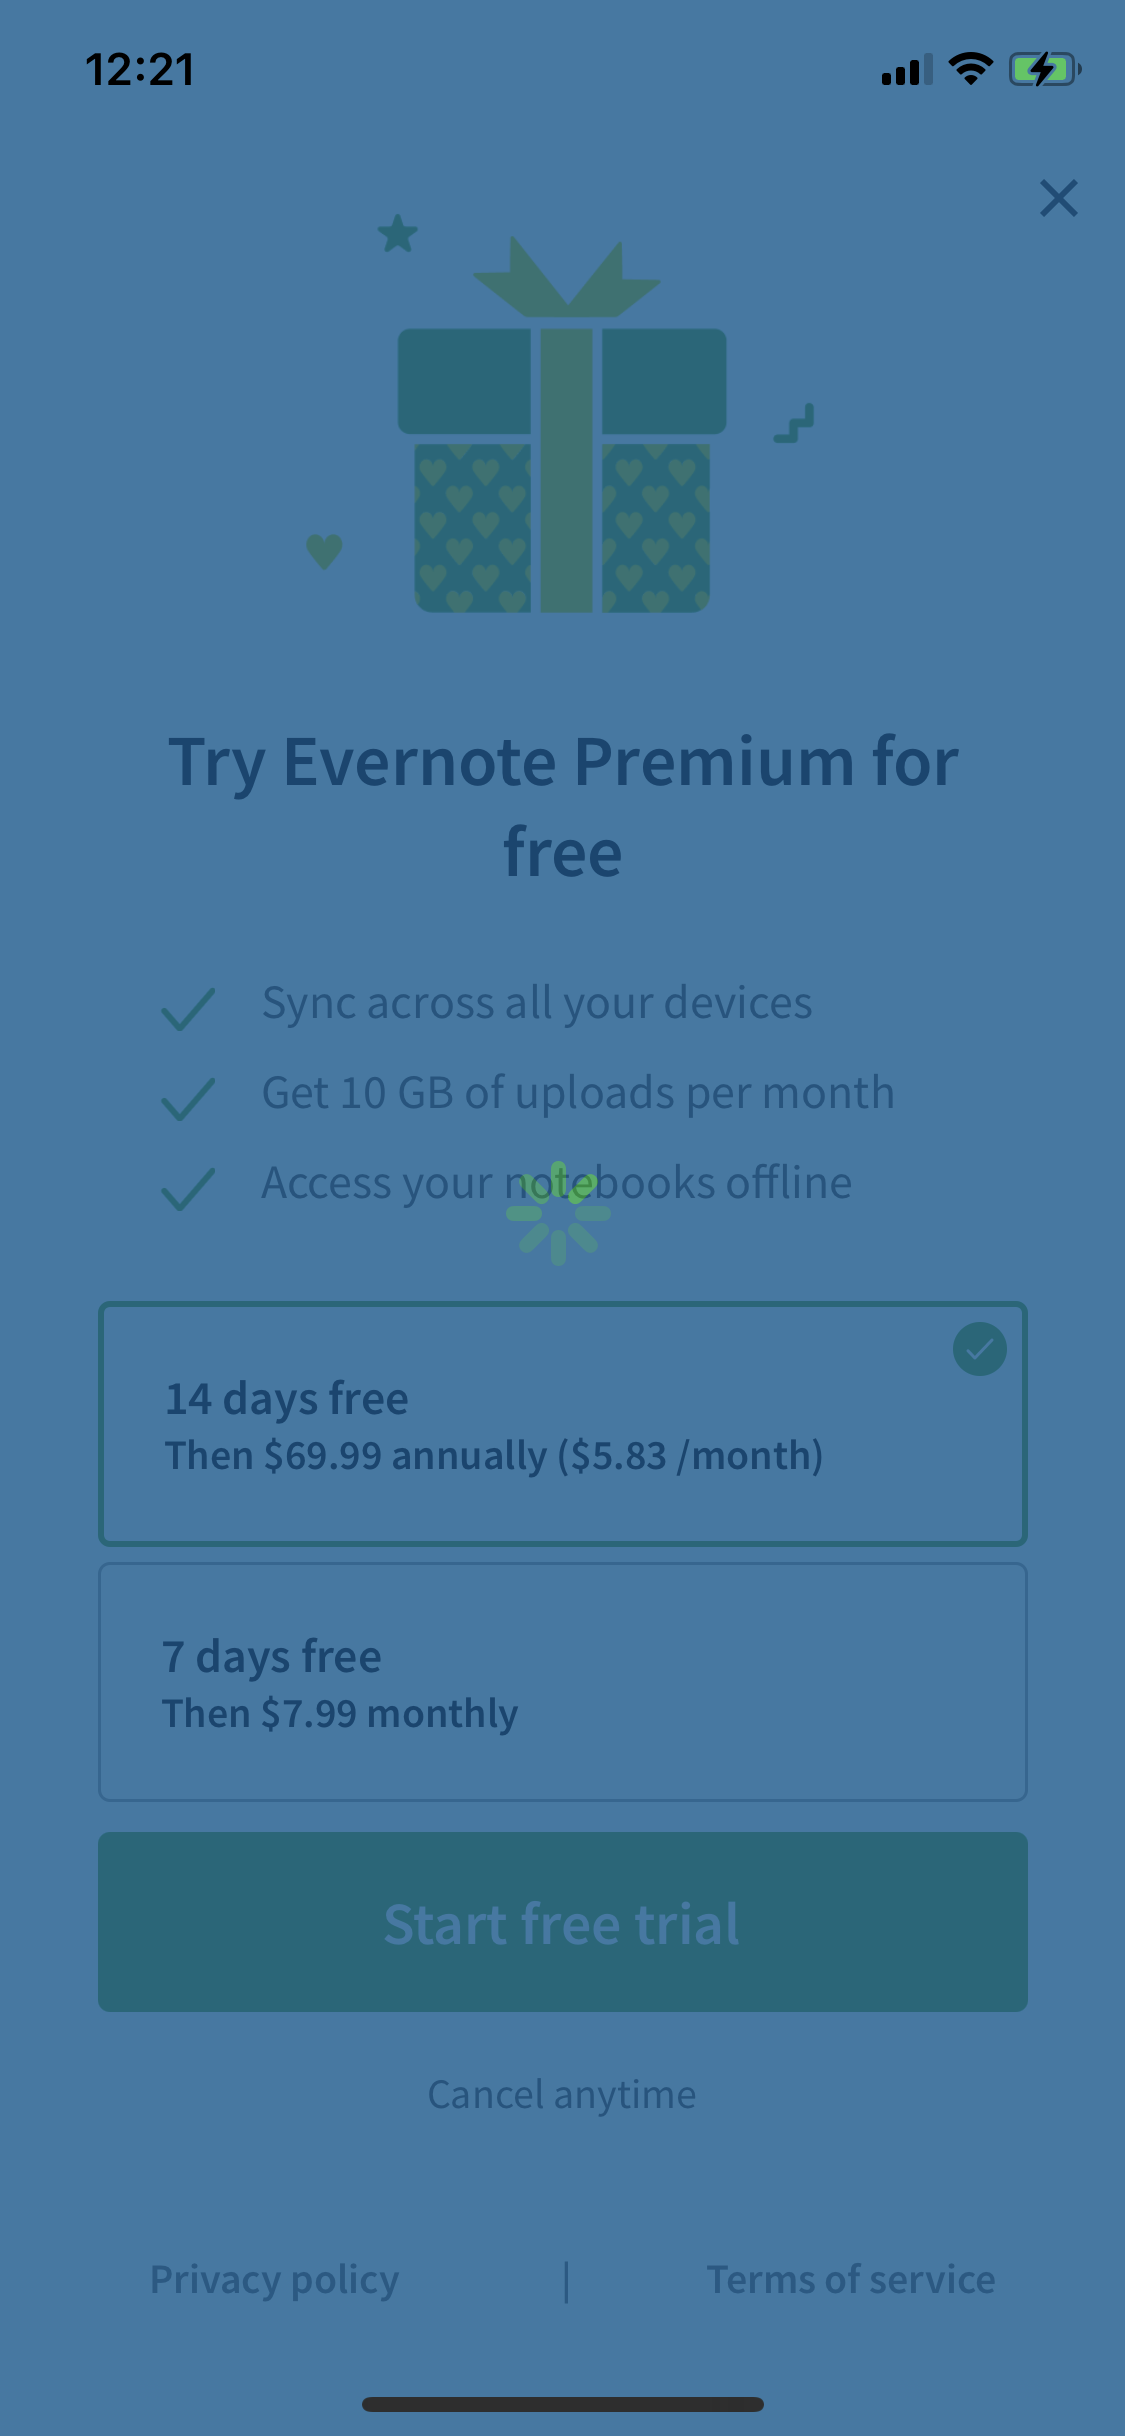 evernote premium free trial